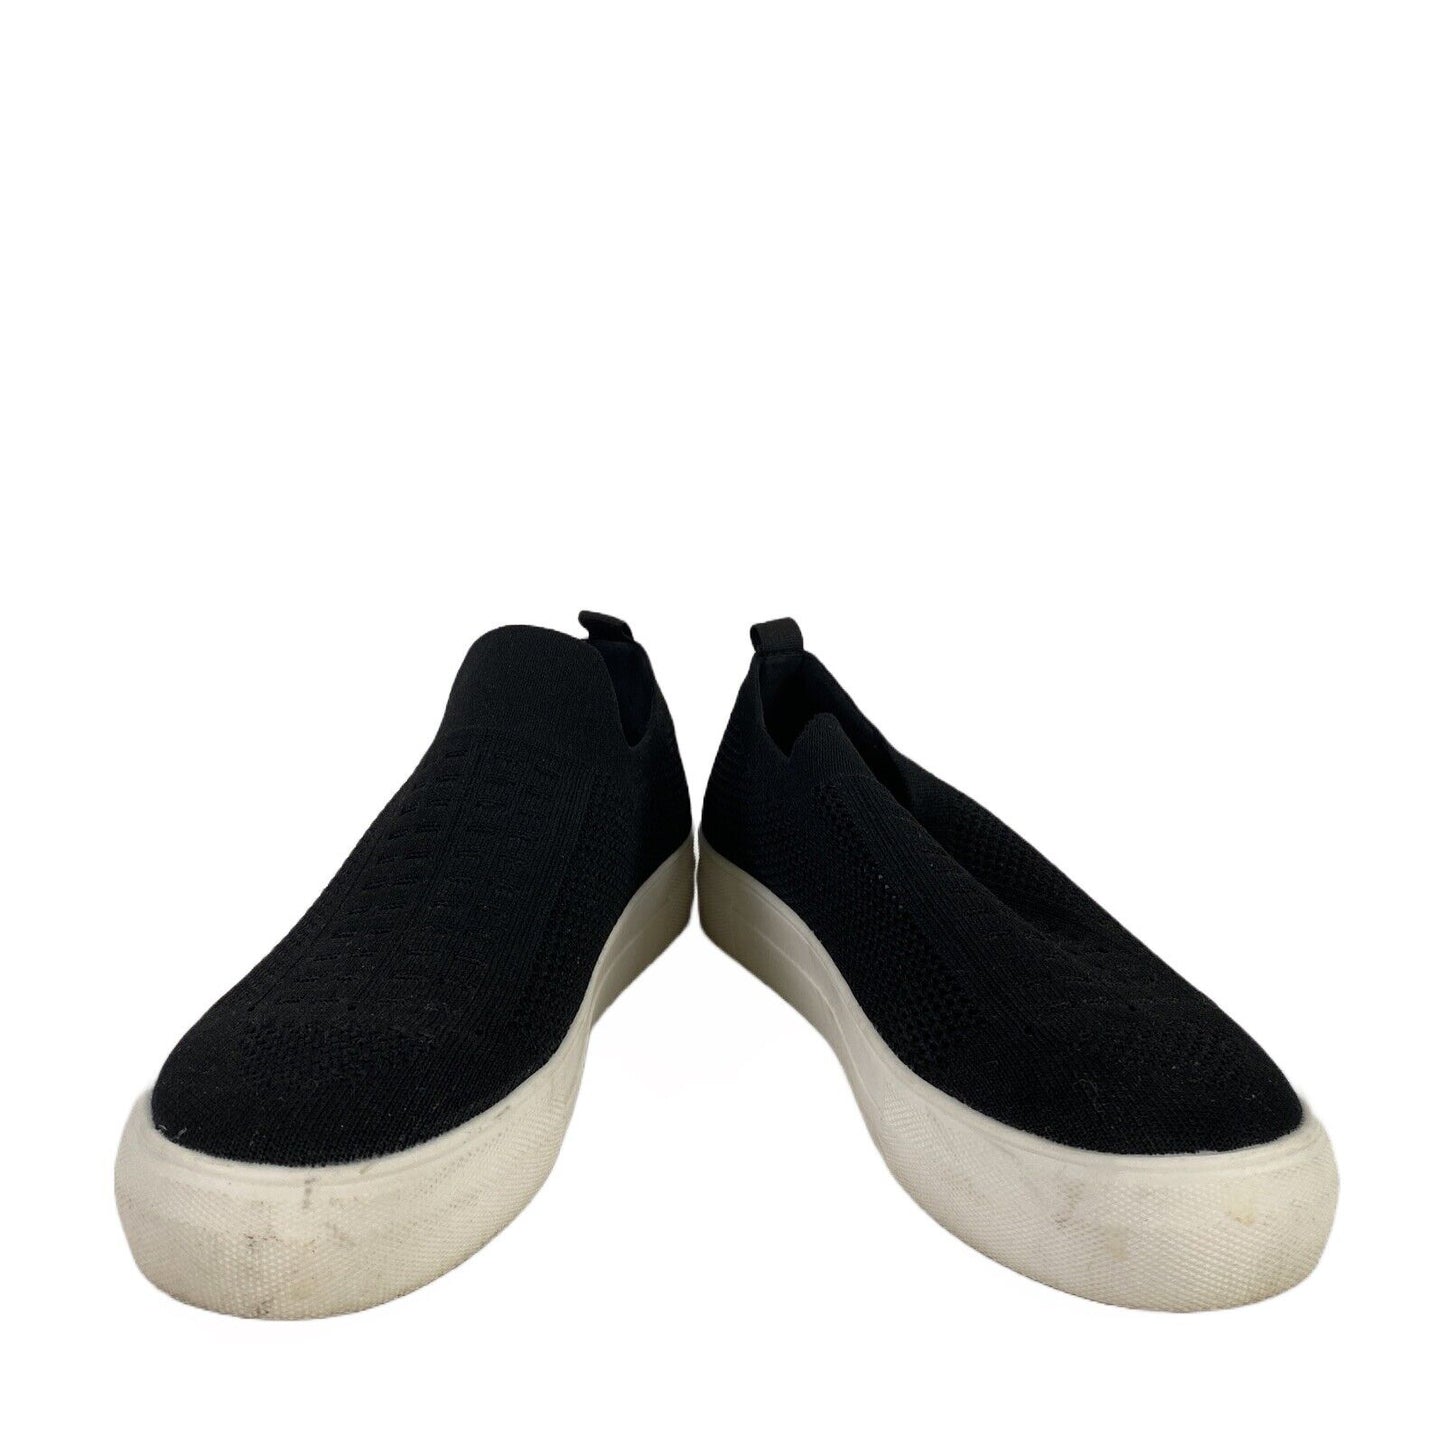 Steve Madden Women's Black Mesh Daray Slip On Sneakers Shoes - 7.5